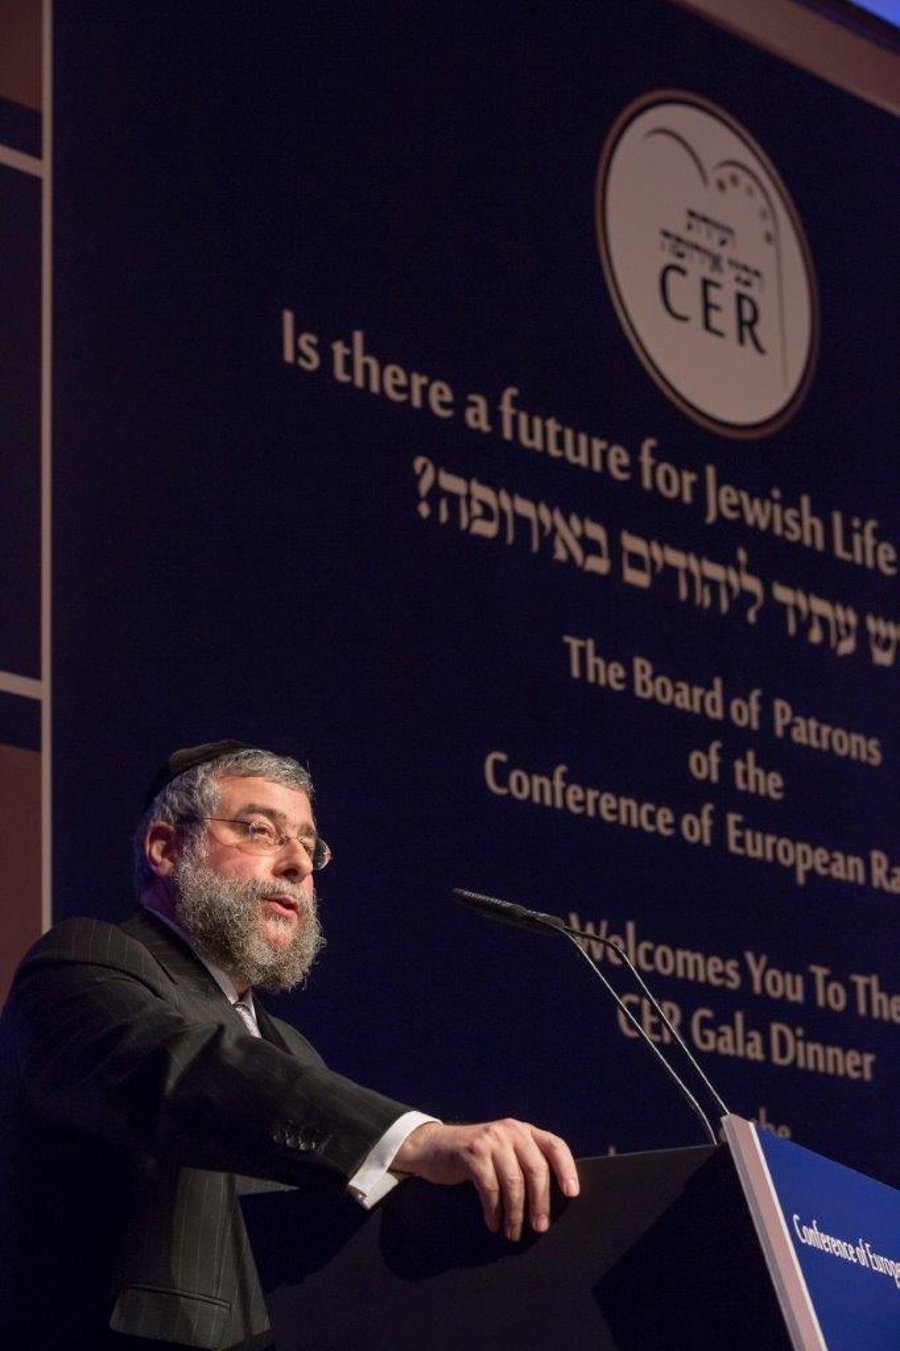 הרב פנחס גולדשמיט: "תודה שהיהודים רצויים באירופה"